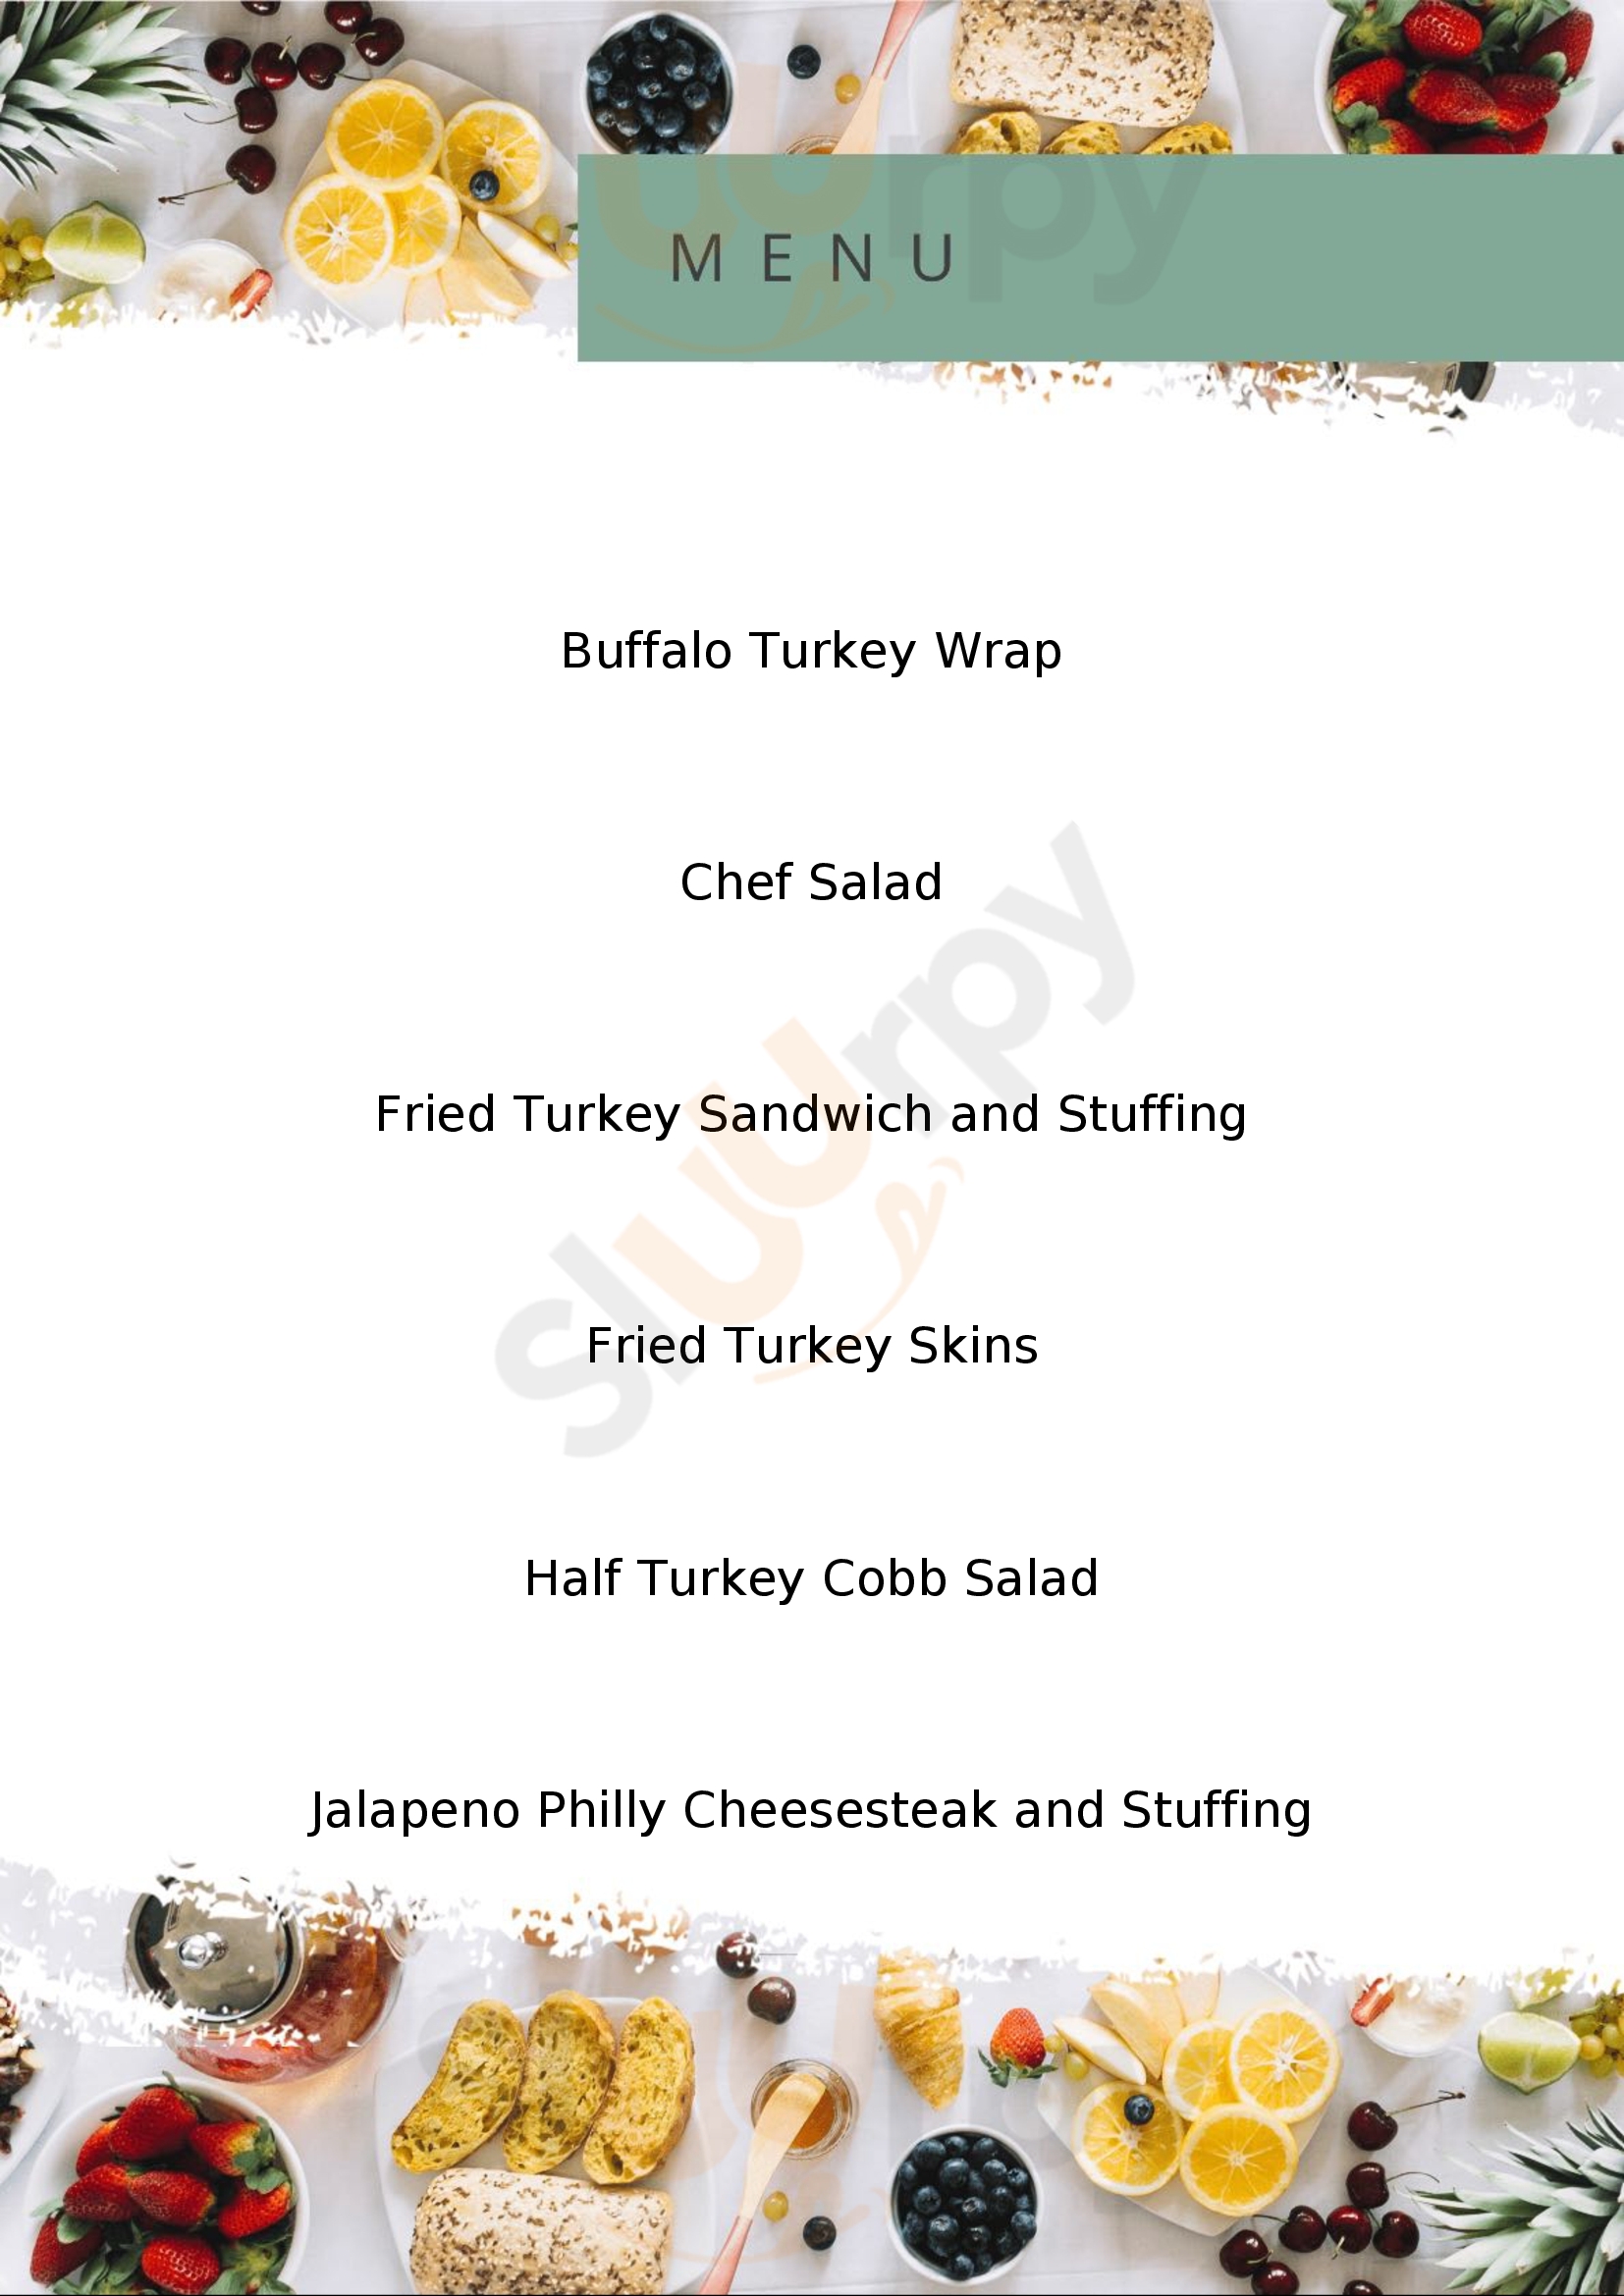 The Fried Turkey Sandwich Shop Fayetteville Menu - 1